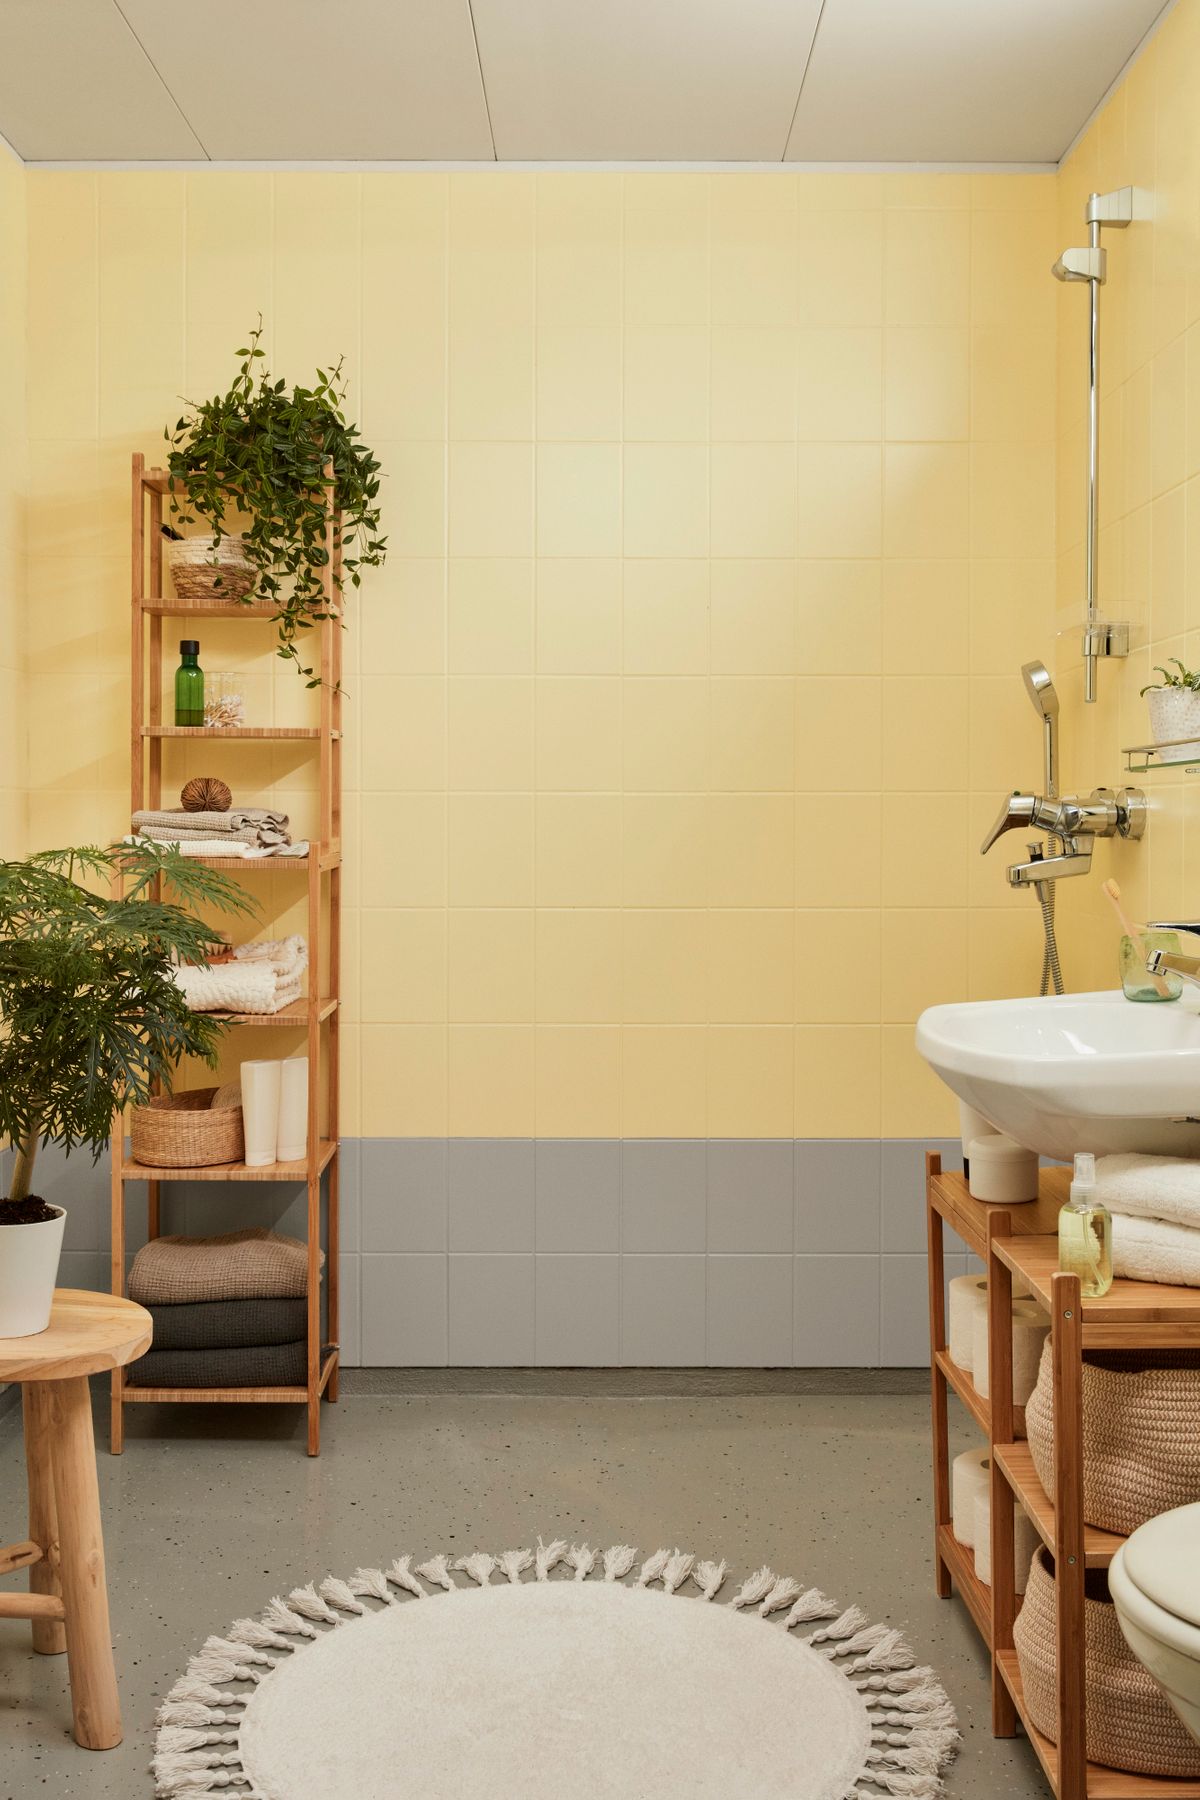 Kúpeľna s obkladačkami natretými s farbou Luja ceramic tiles